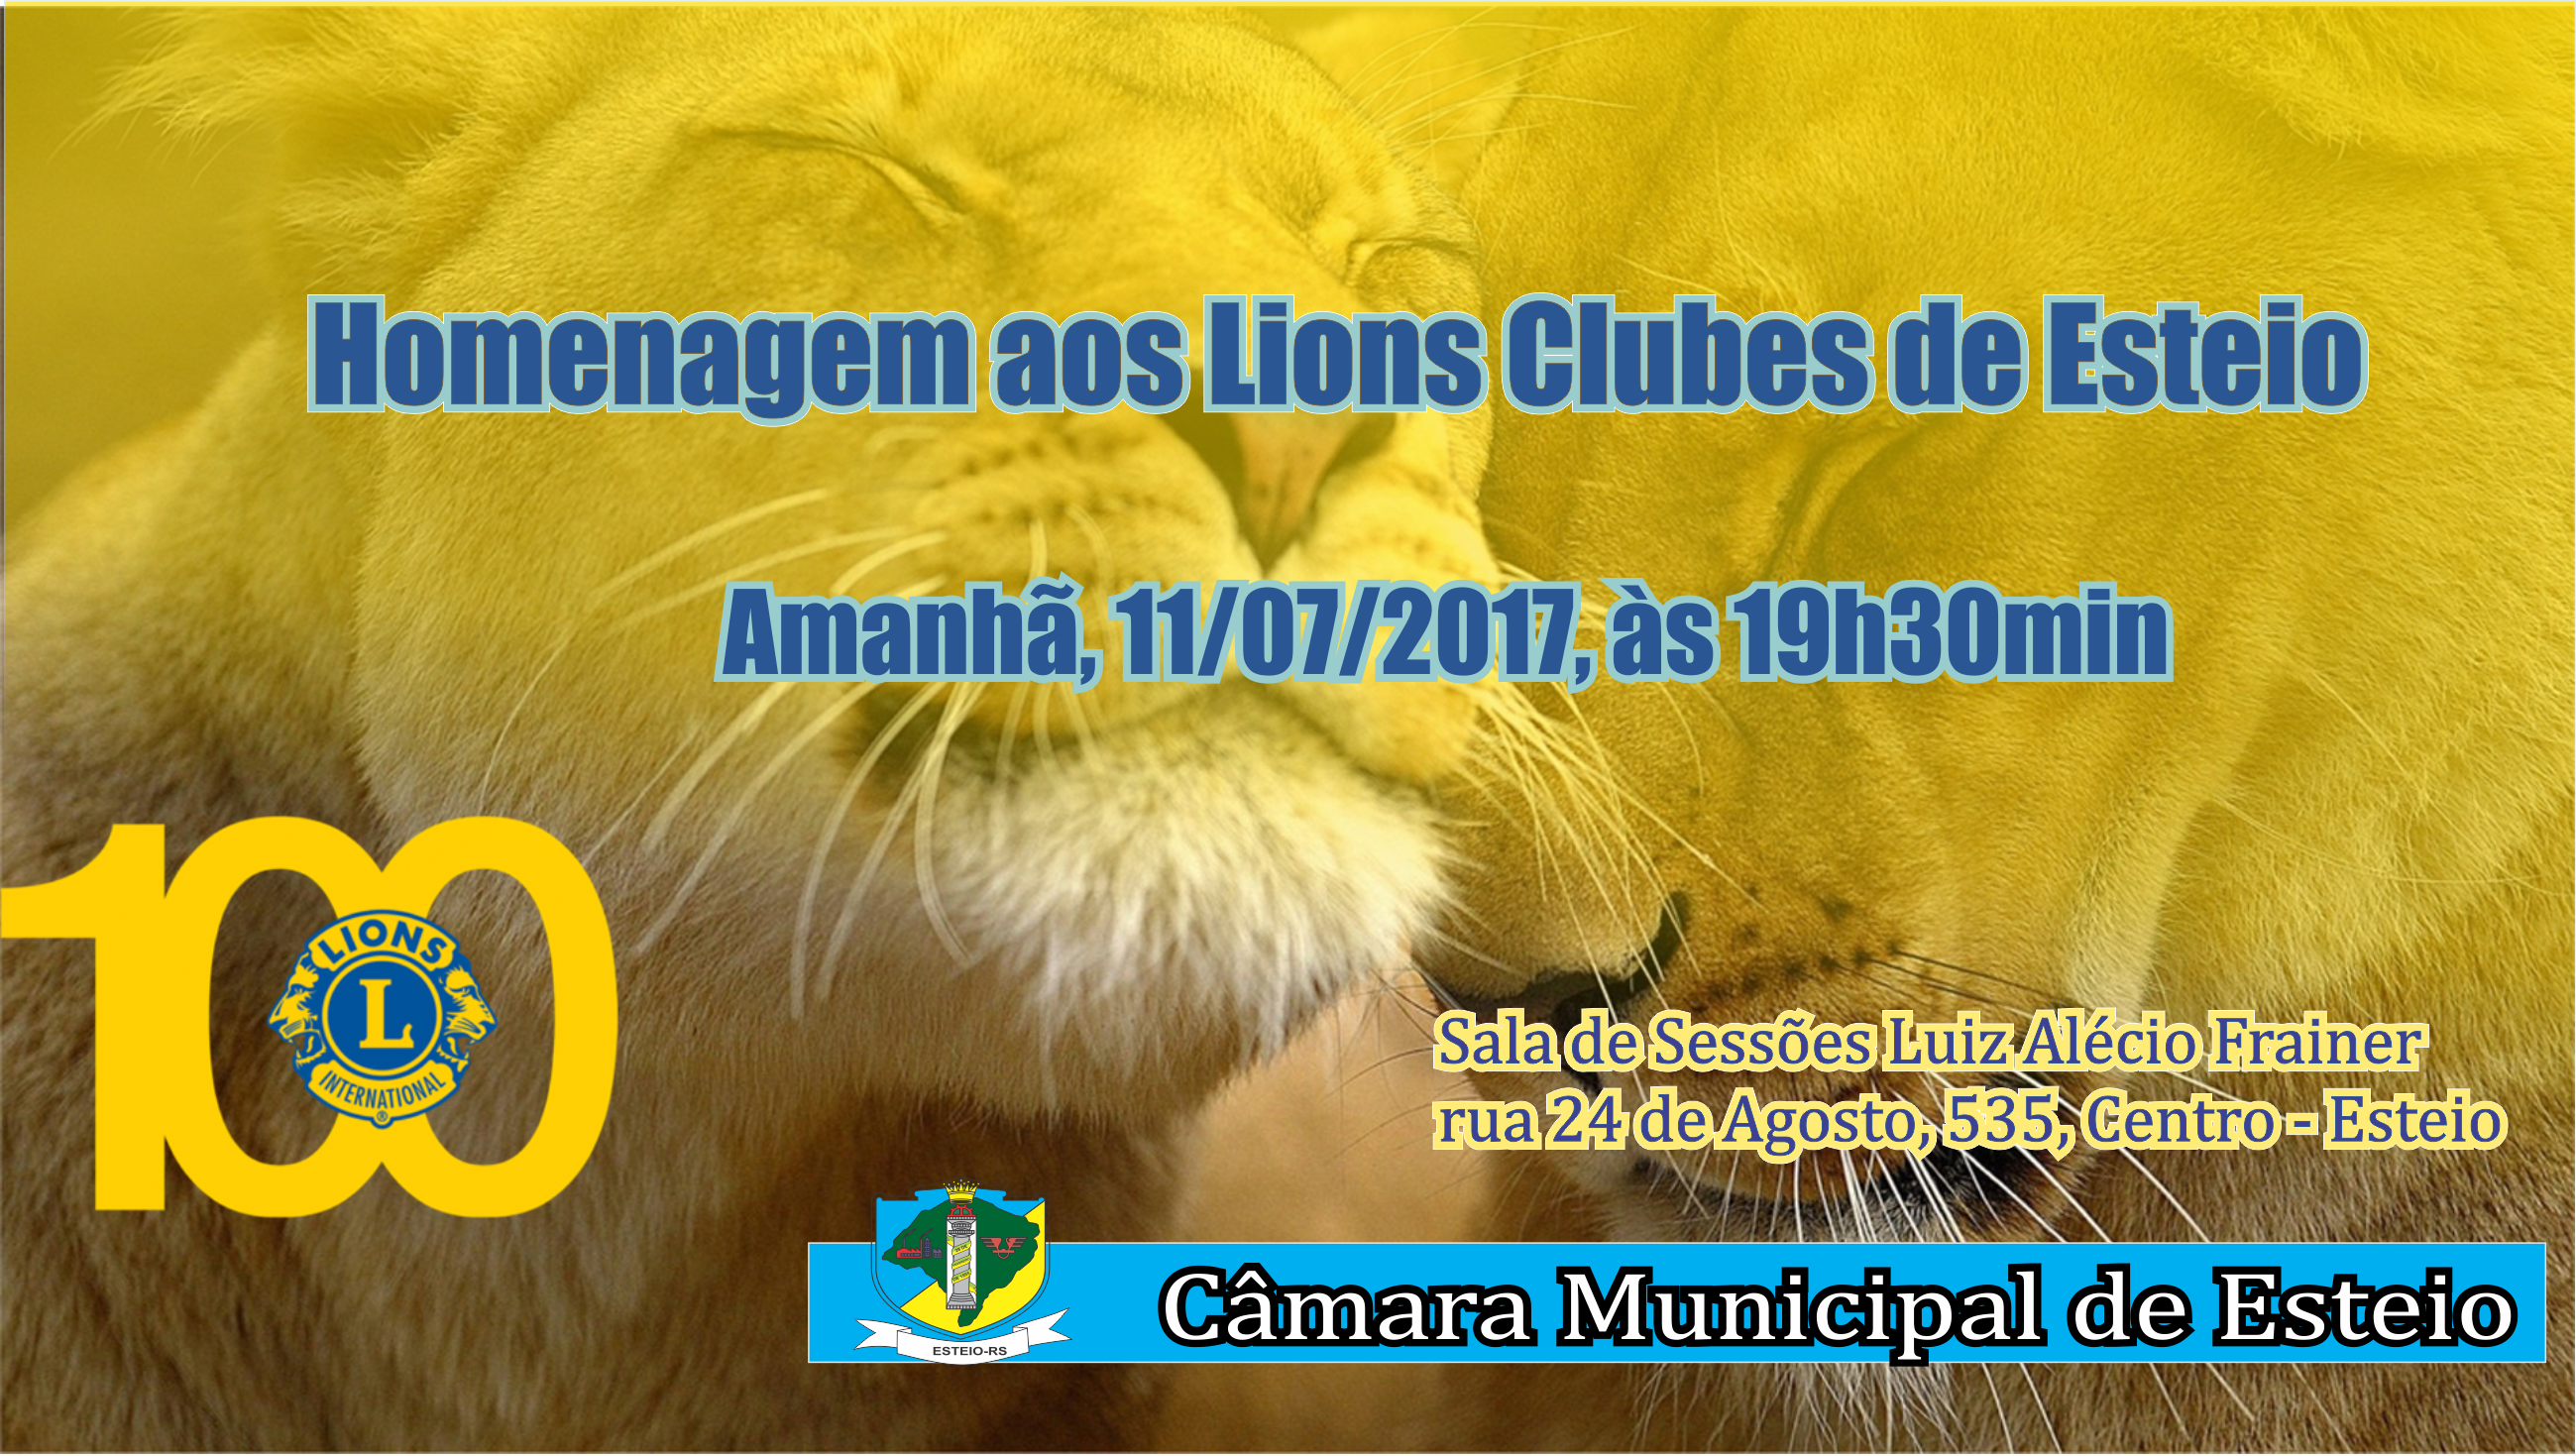 Centenário do Lions Internacional será comemorado pela Câmara de Esteio amanhã